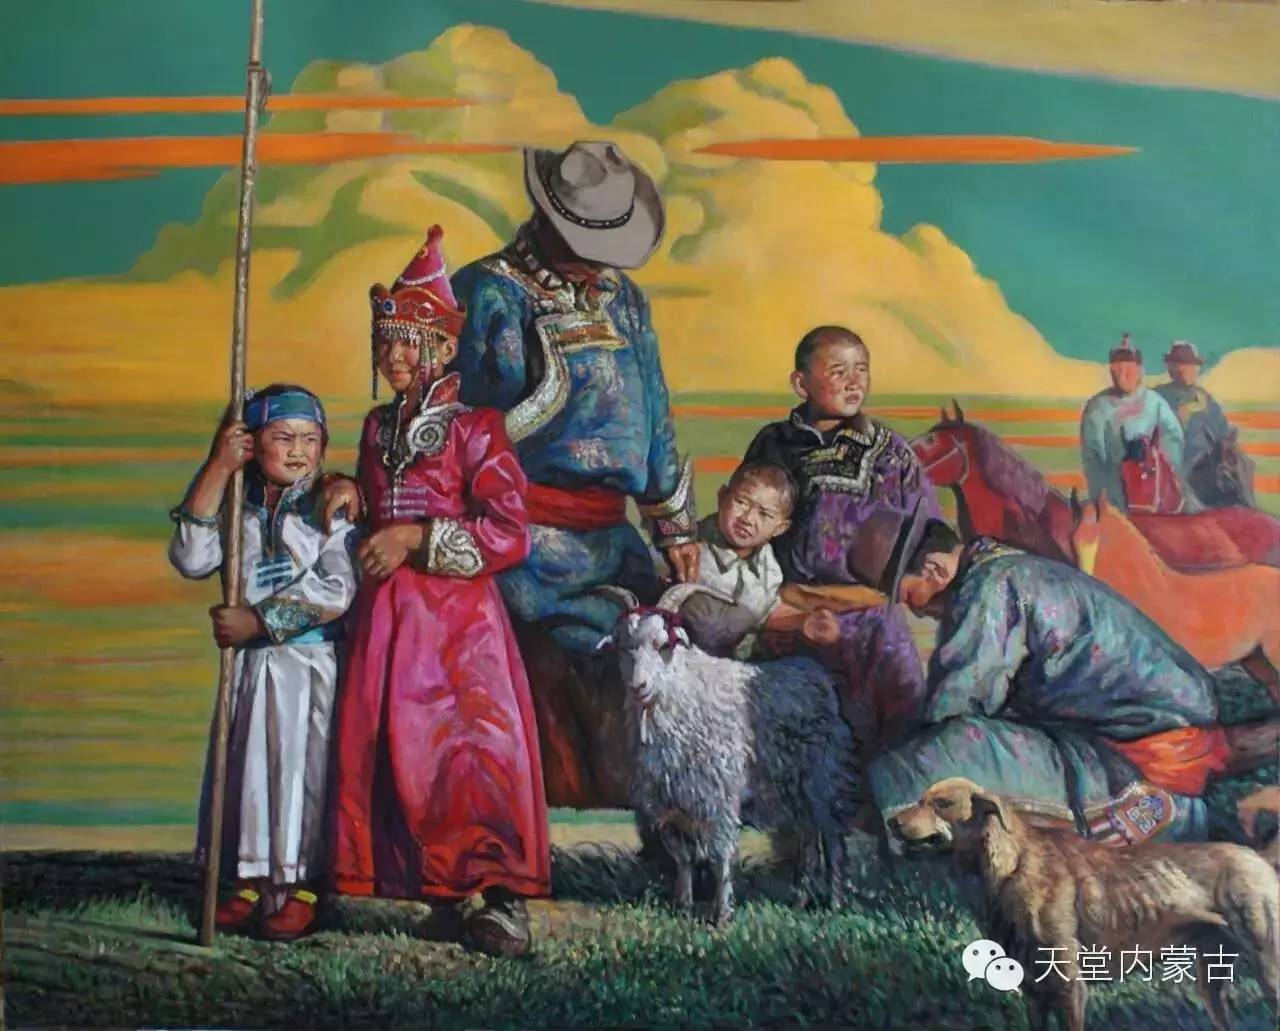 欣赏艺术家桑嘉扎木苏游牧蒙古主题绘画作品-草原元素---蒙古元素 Mongolia Elements